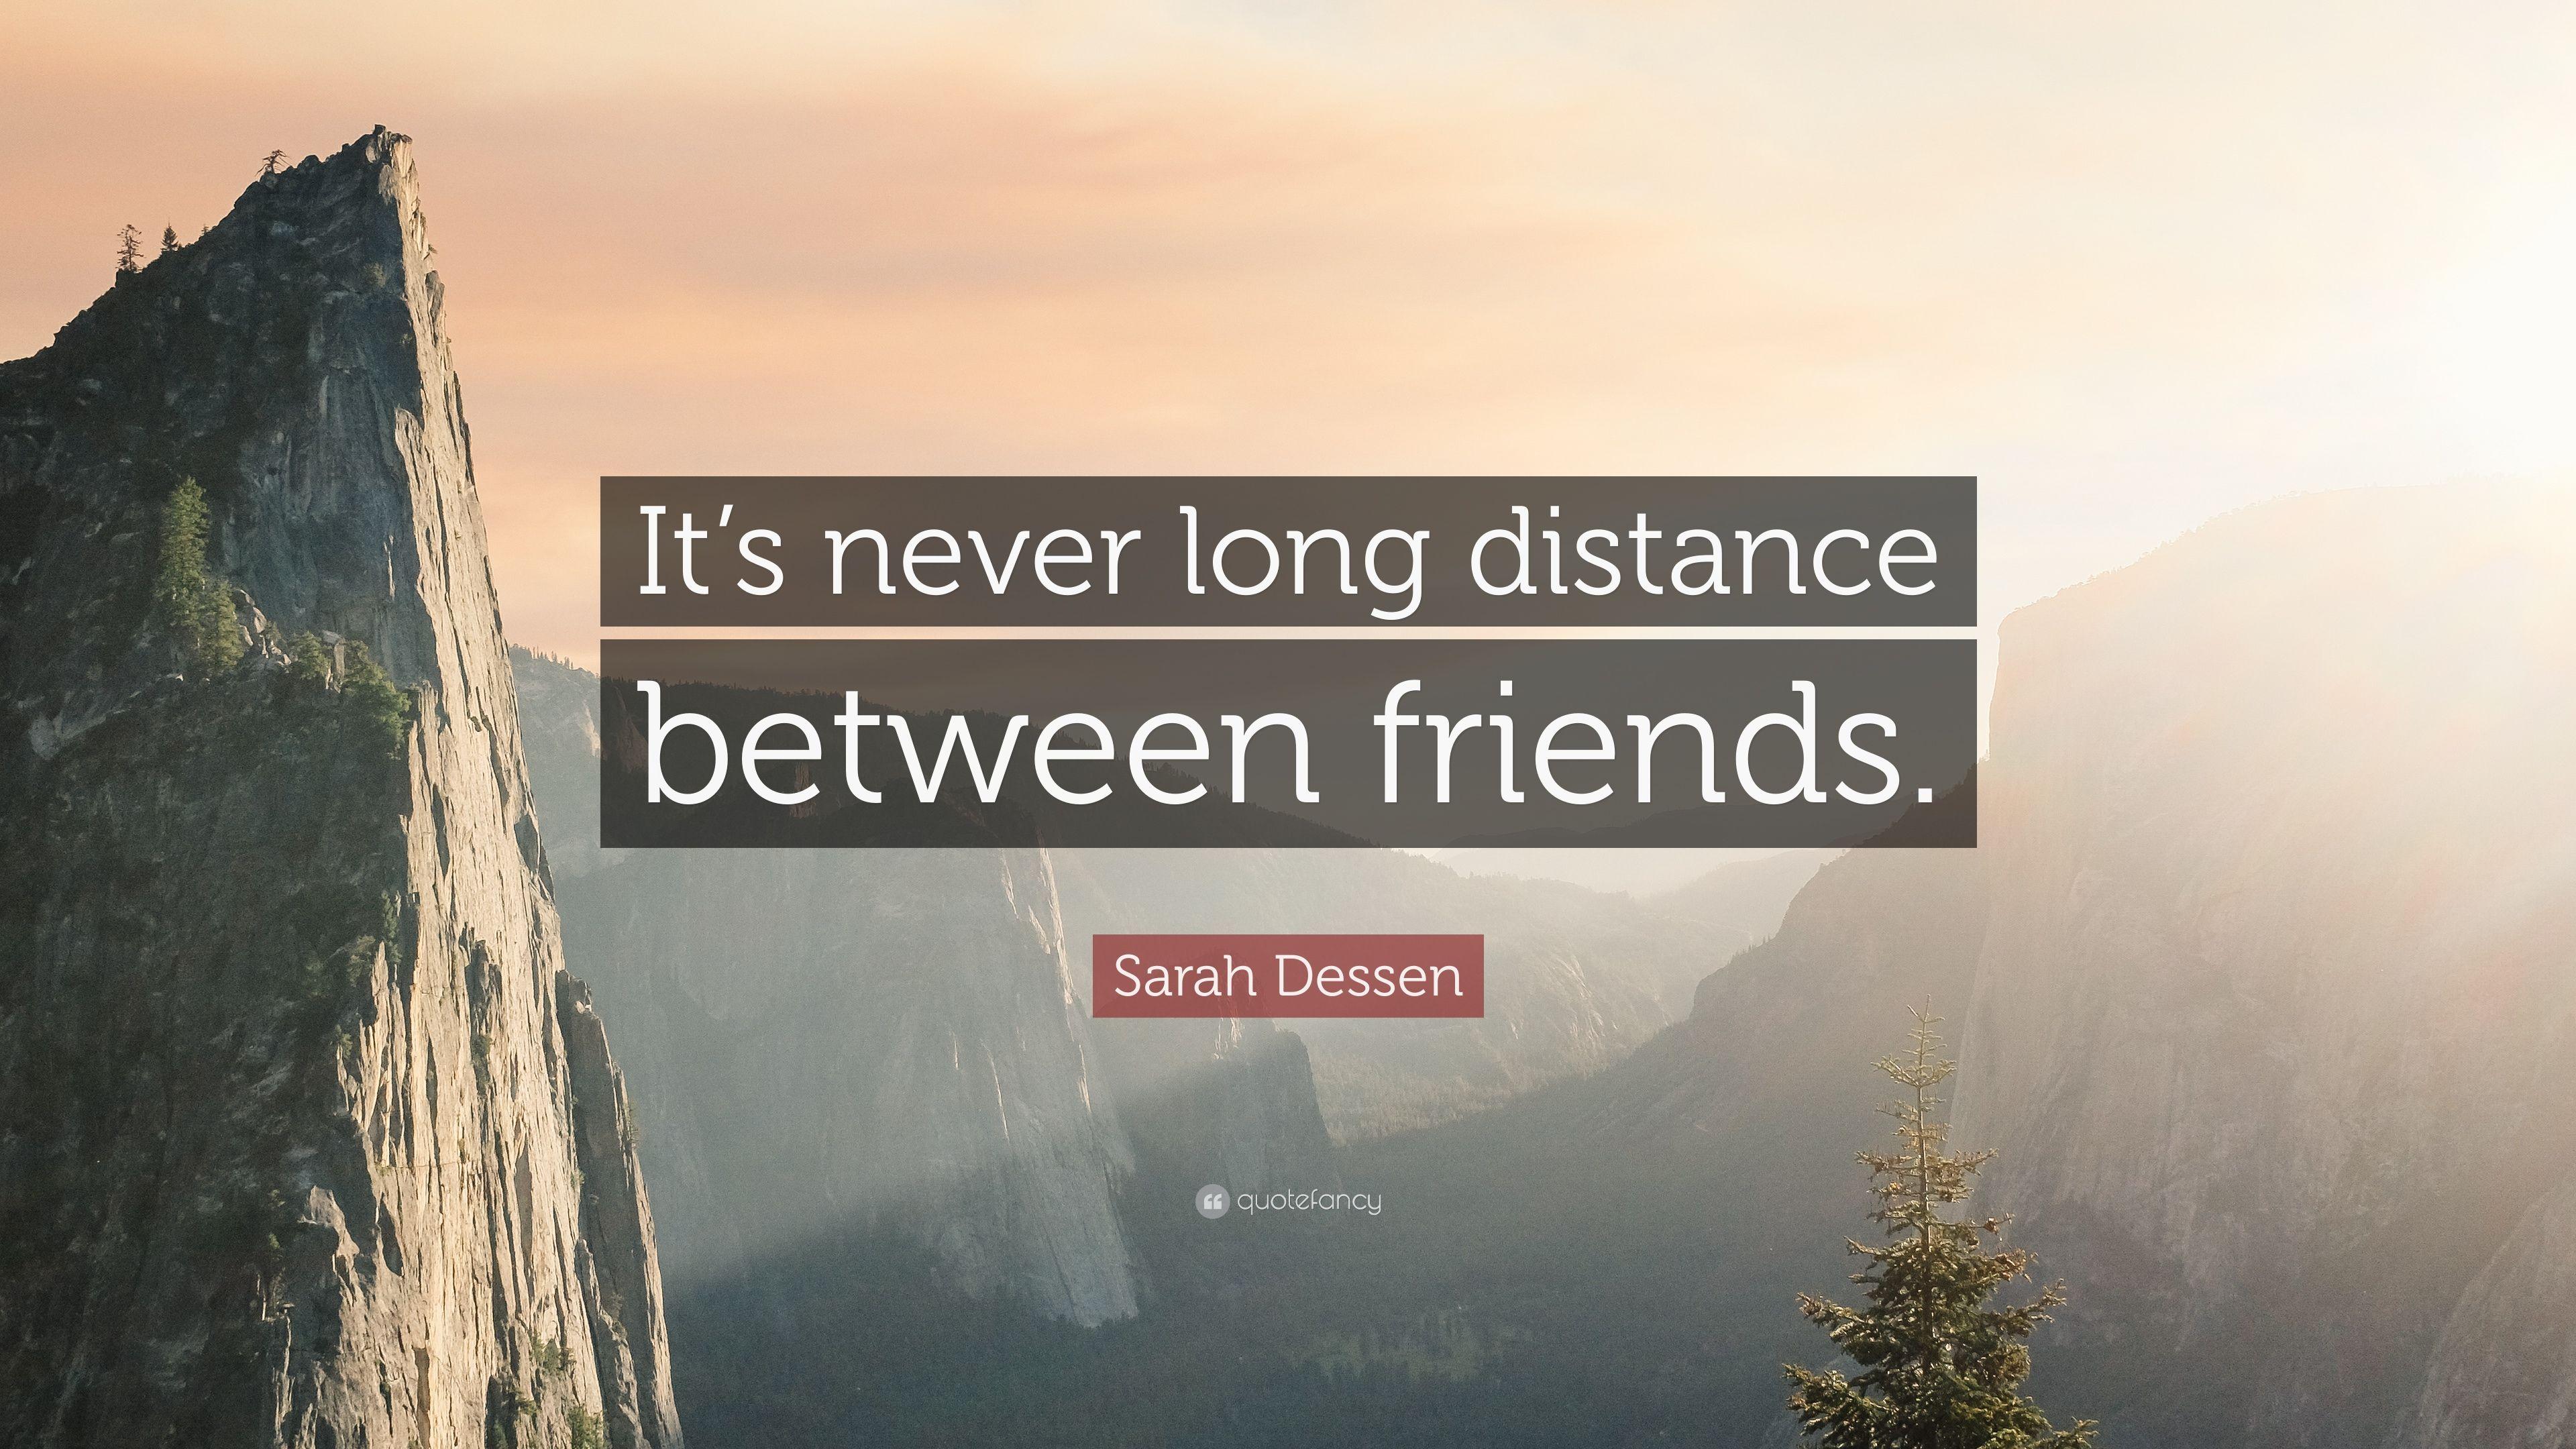 Sarah Dessen Quote: “It's never long distance between friends